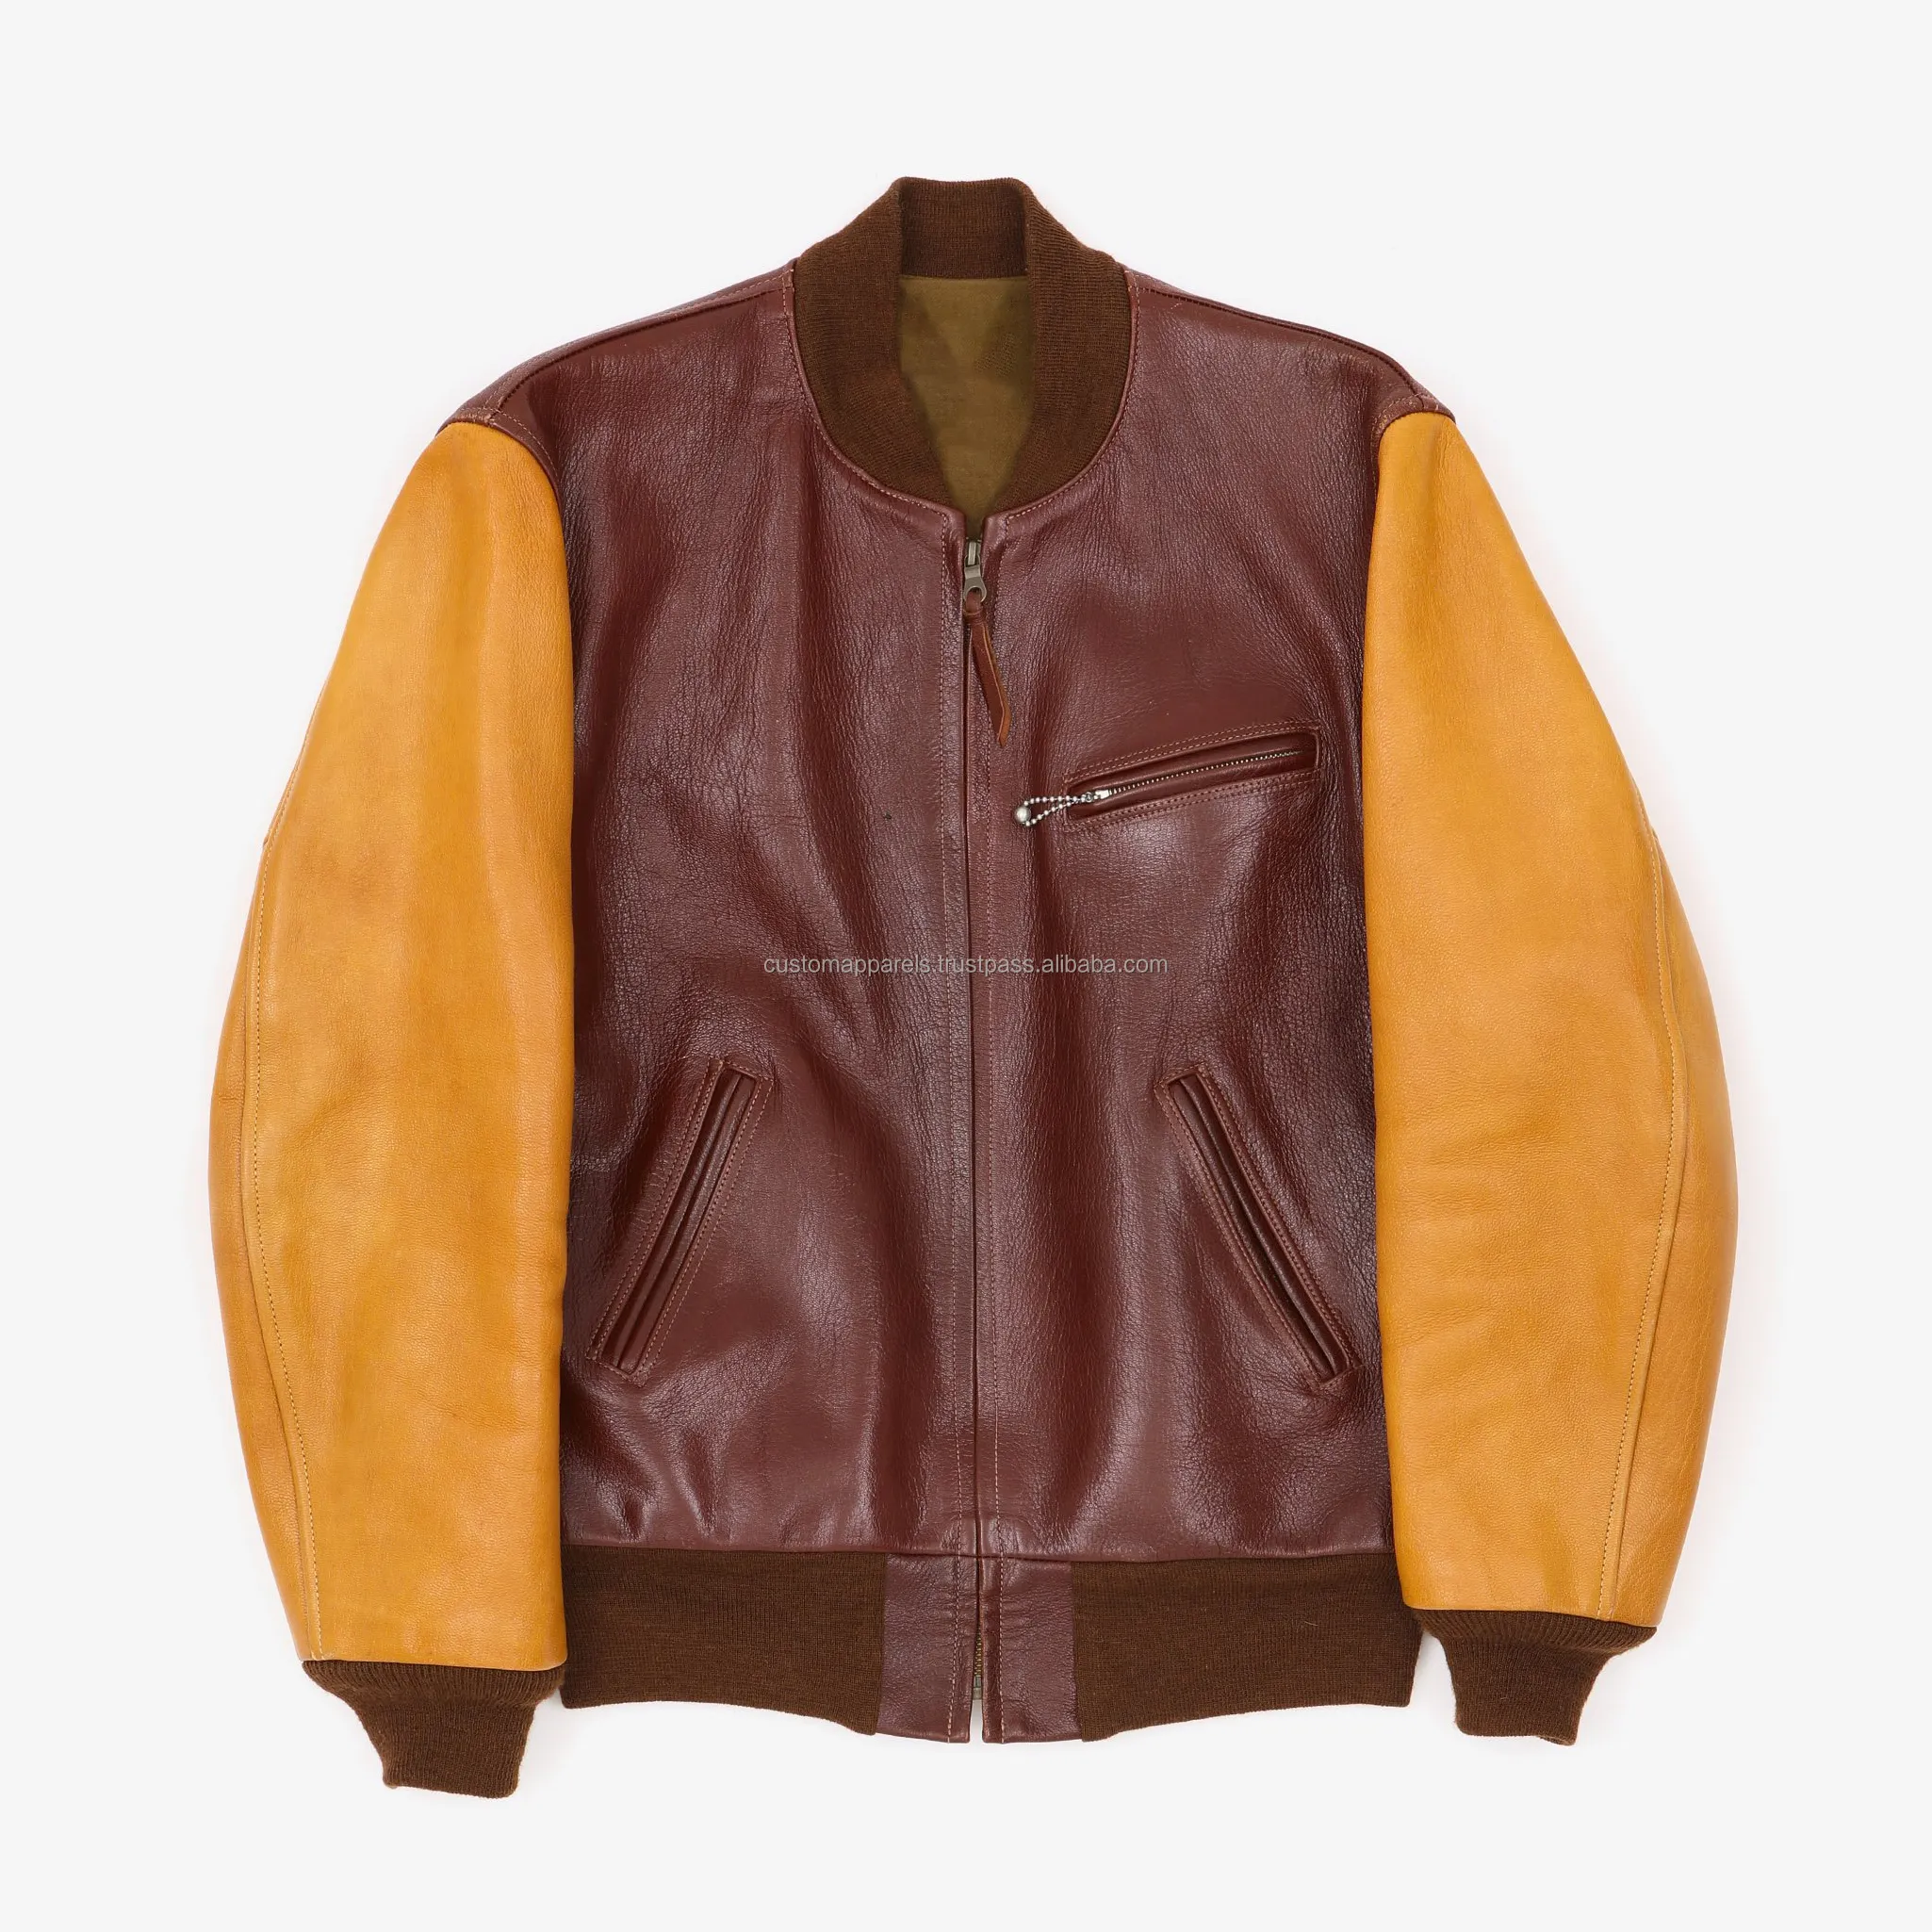 Individuelles Freizeit-Design Herren hochwertiges Kuhfell Leder Varsity-Jacke Front Reißverschluss-Jacken